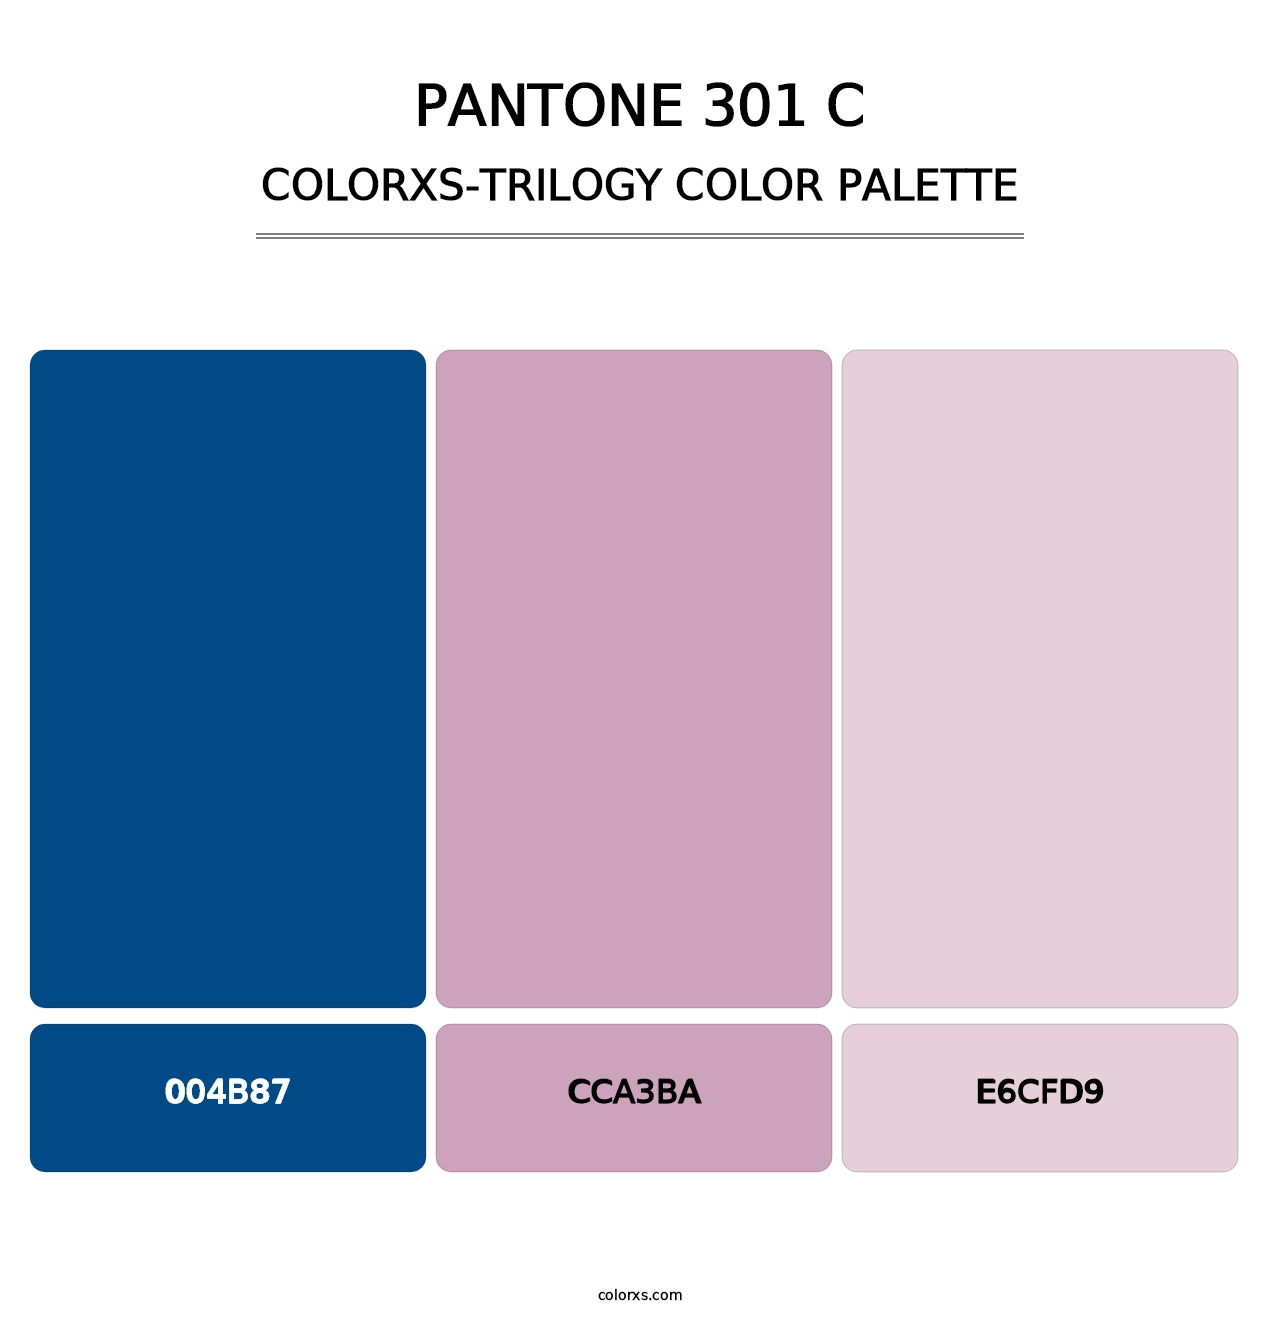 PANTONE 301 C - Colorxs Trilogy Palette